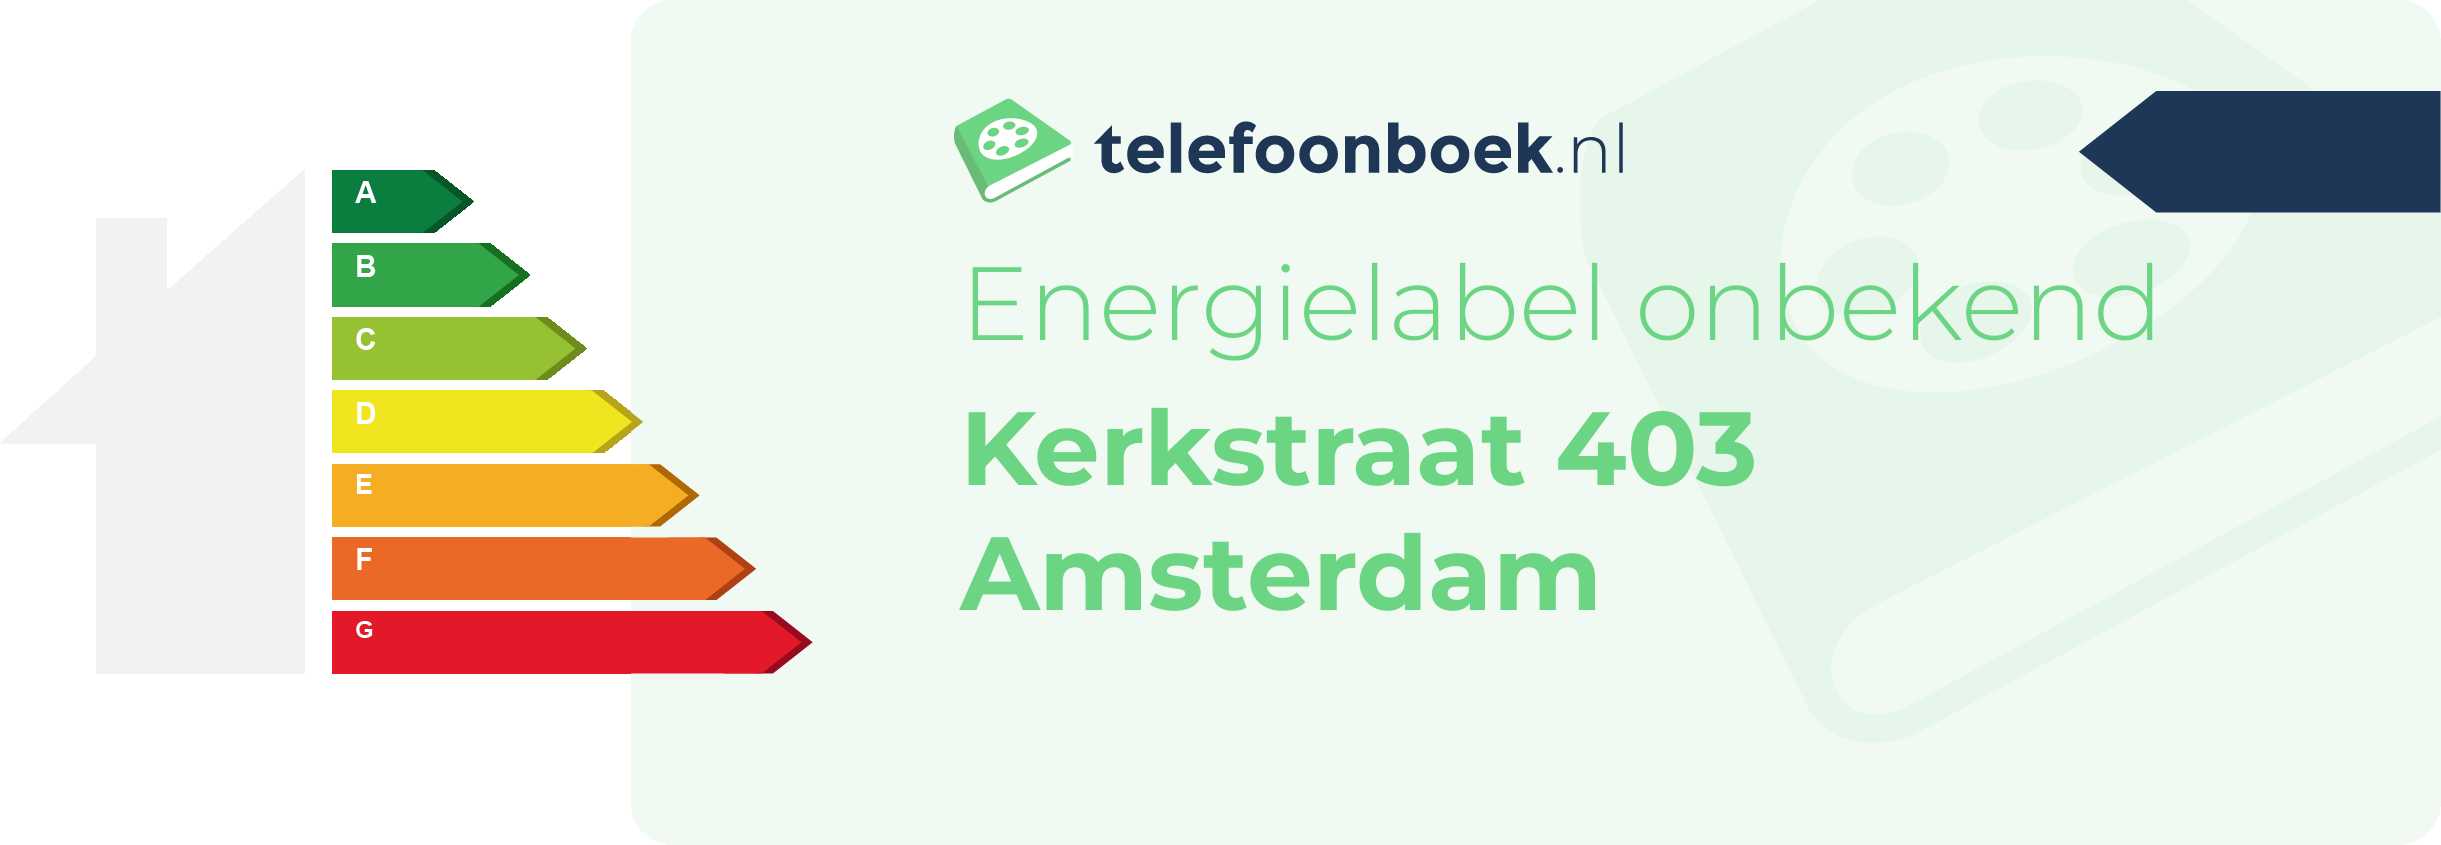 Energielabel Kerkstraat 403 Amsterdam